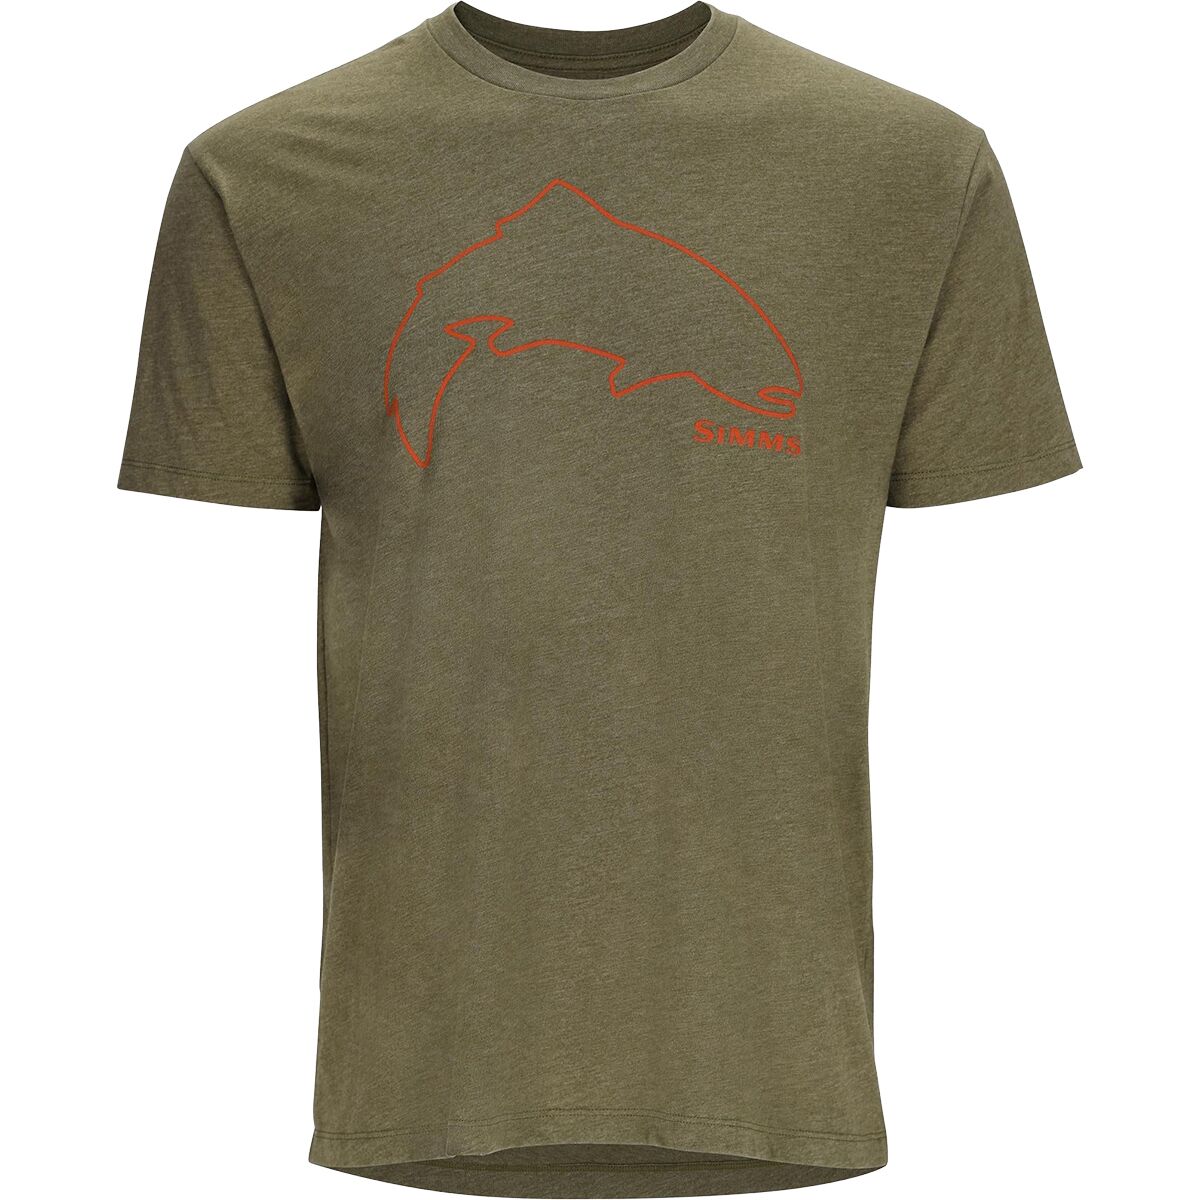 Trout Outline T-Shirt - Men